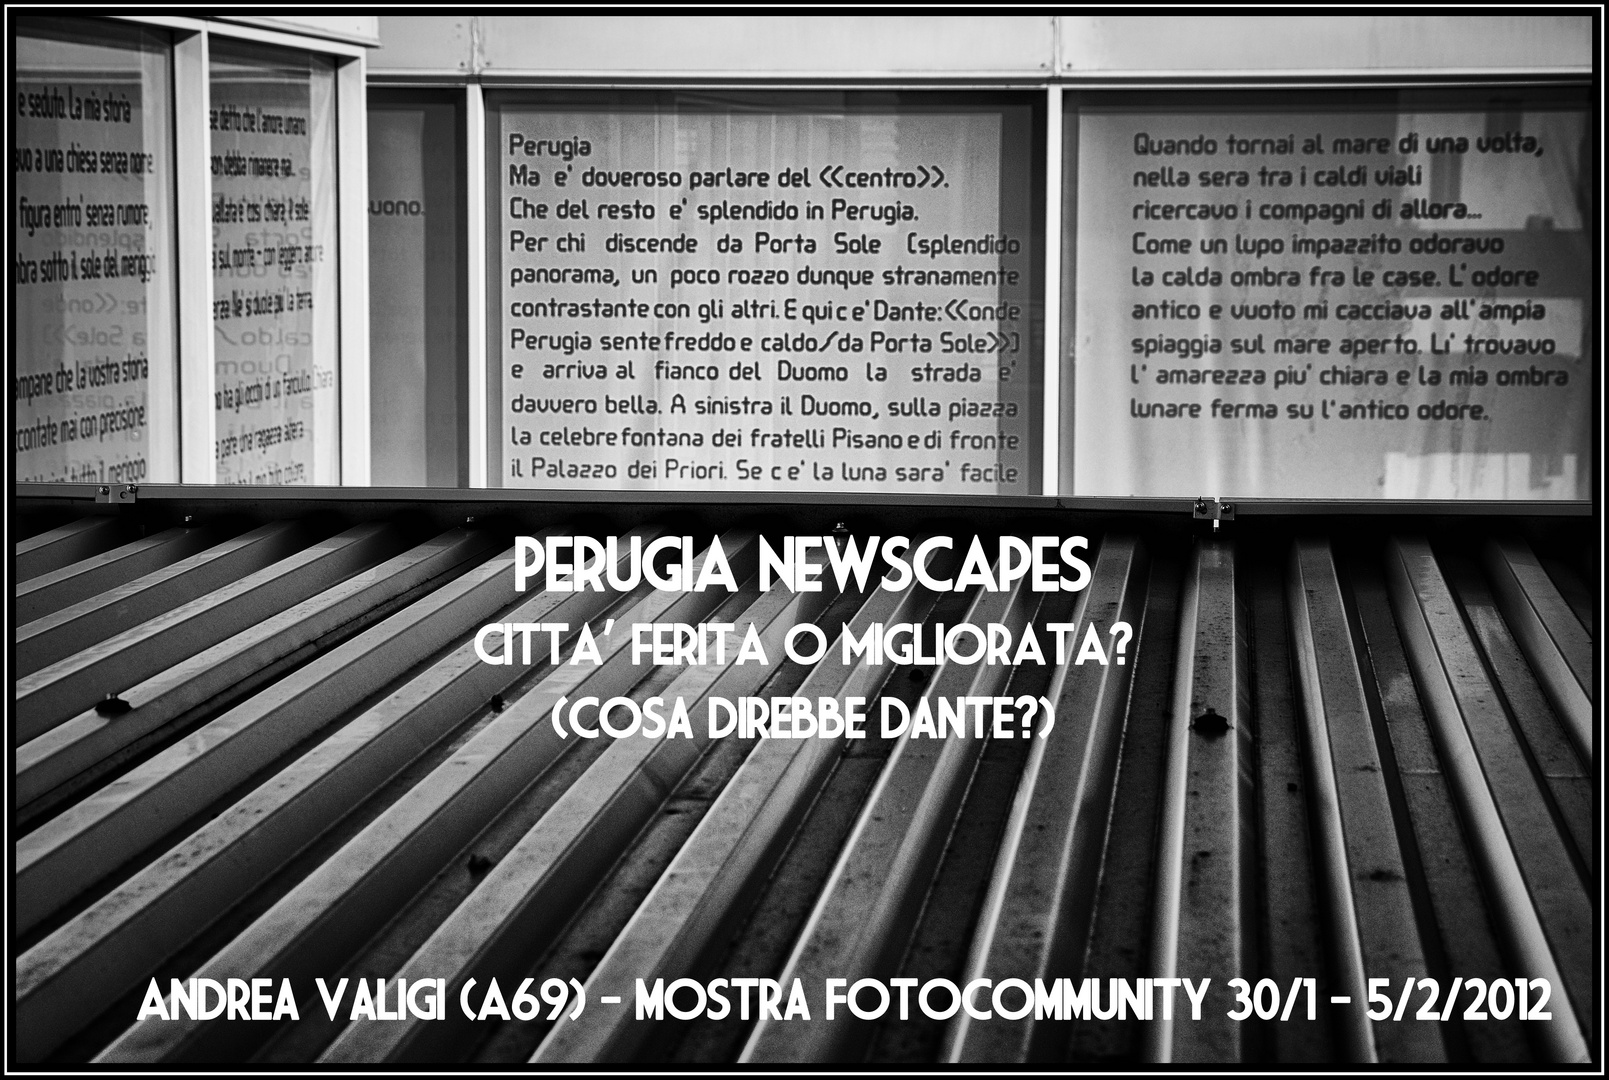 Mostra online di Andrea Valigi "Perugia Newscapes"